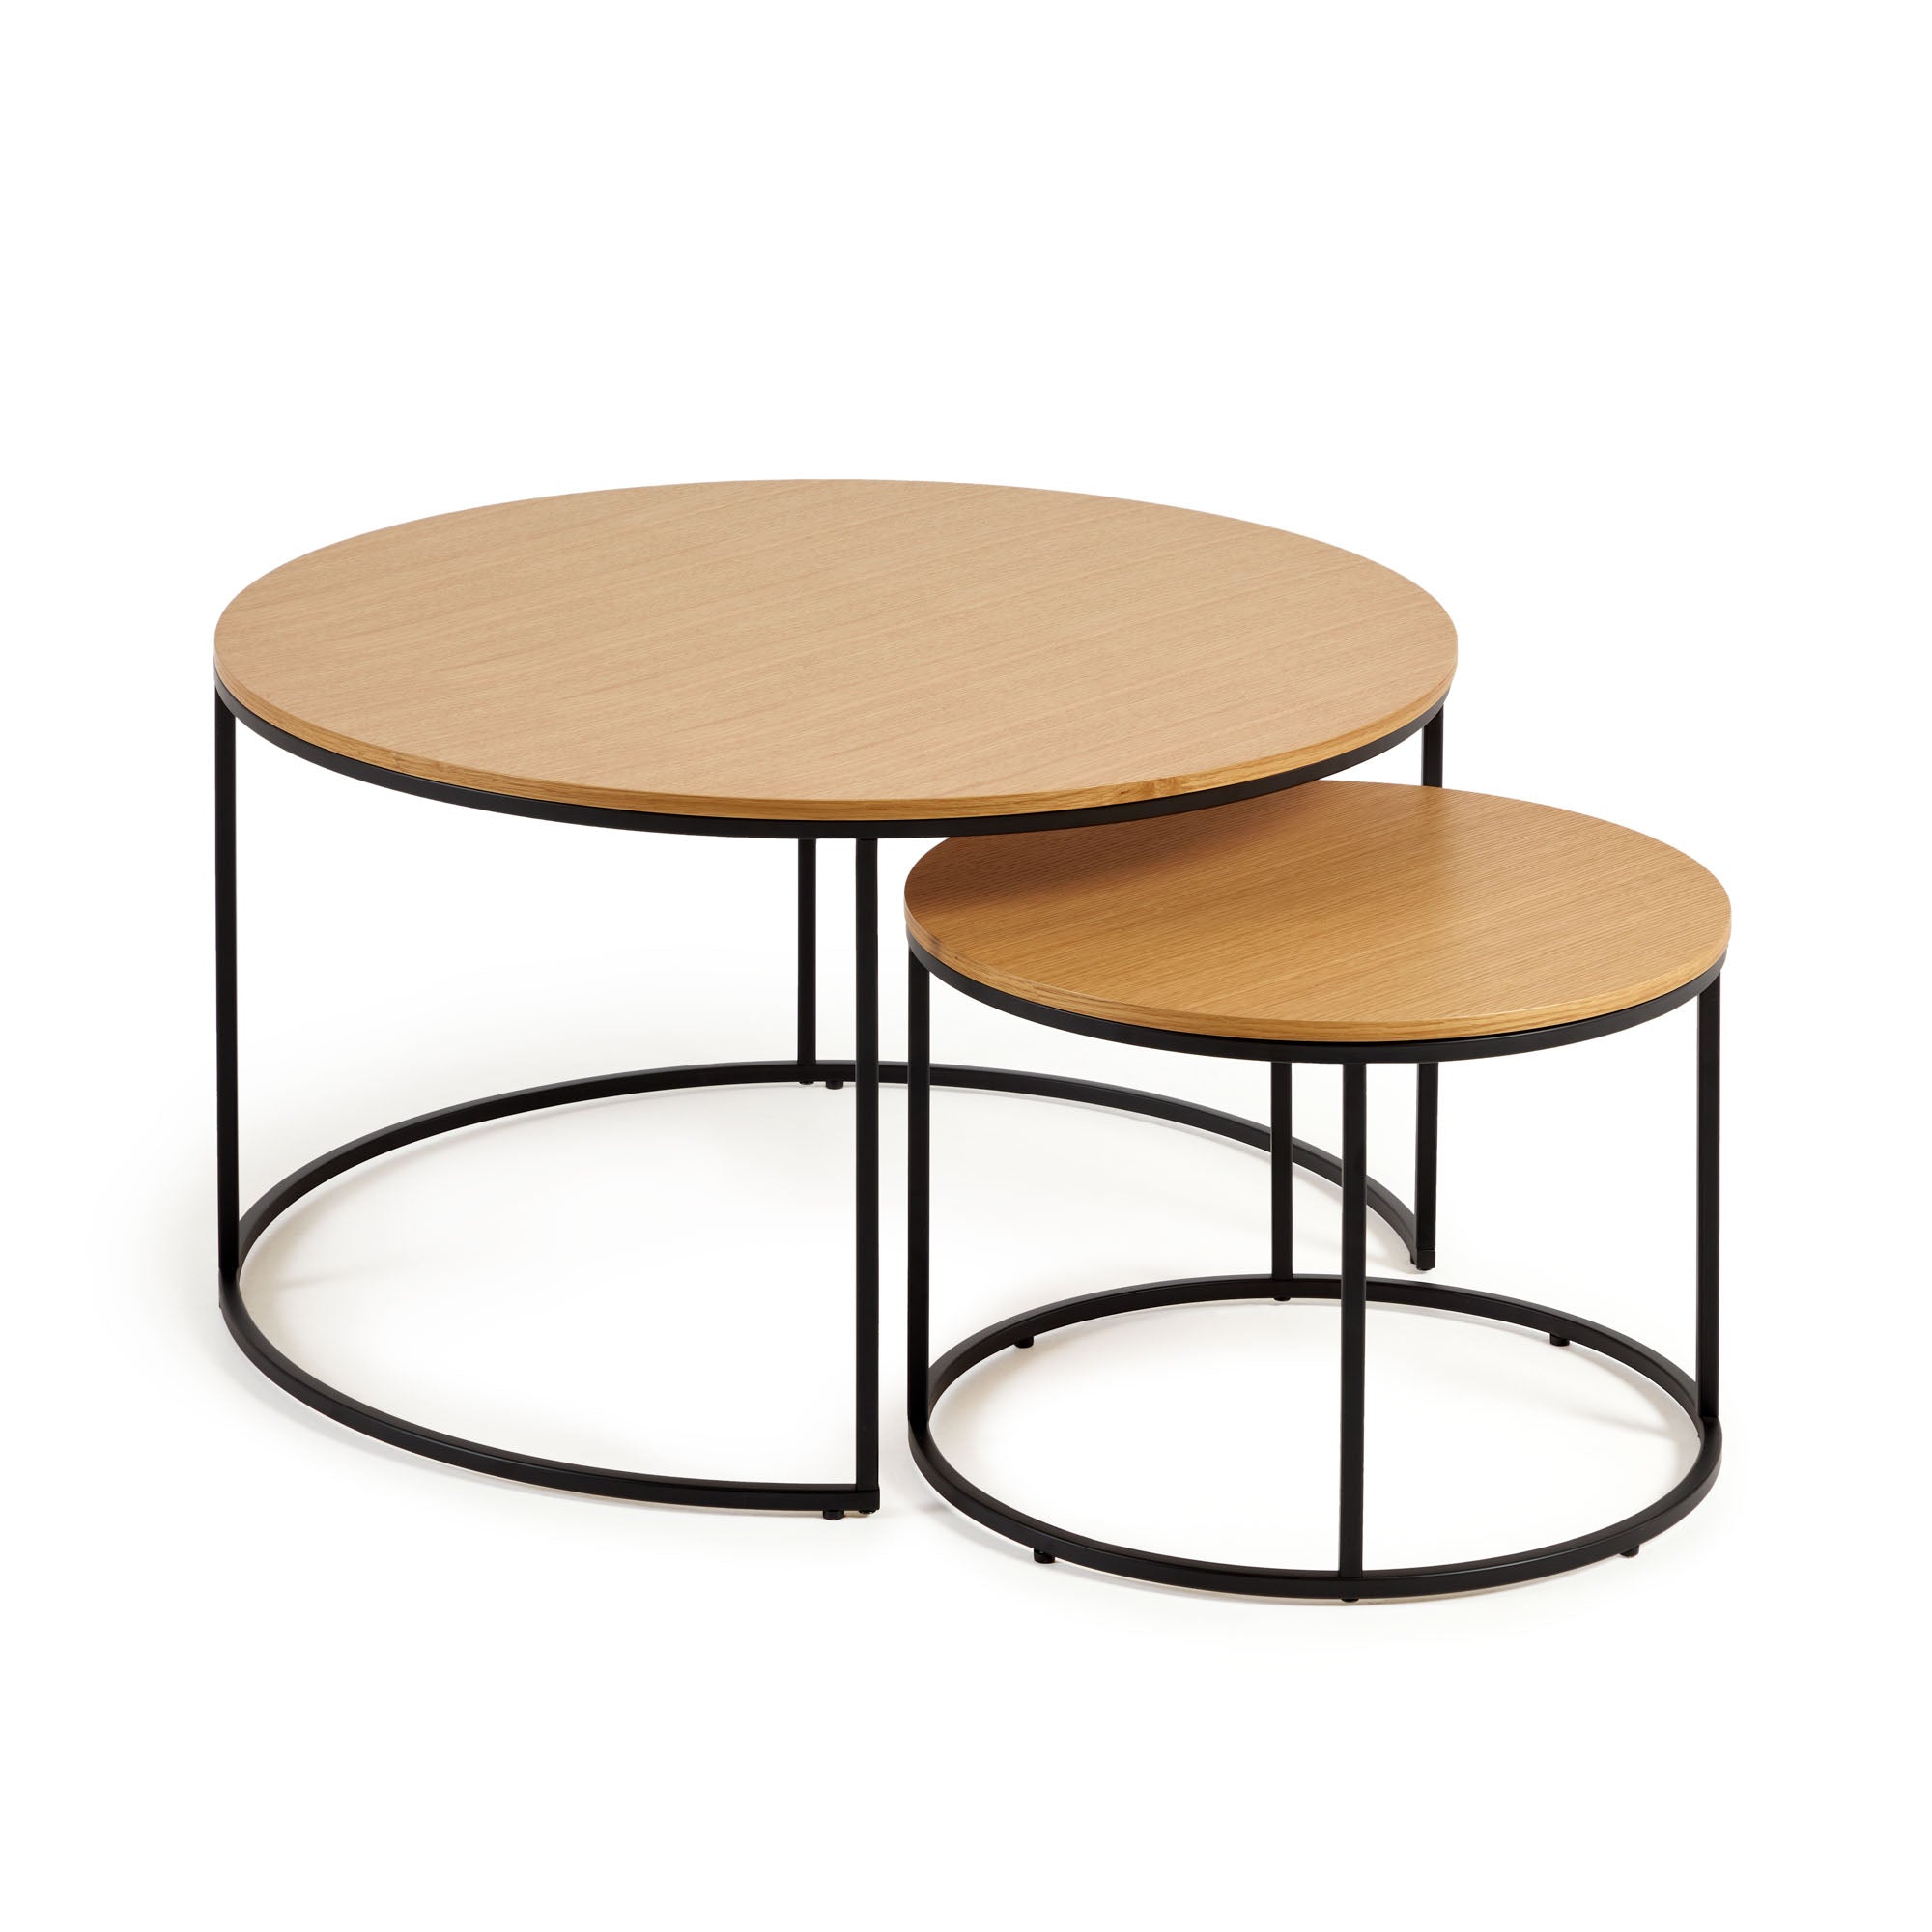 Yoana set of 2 nesting side tables with oak wood veneer & black metal, Ø 80 cm / Ø 50 cm